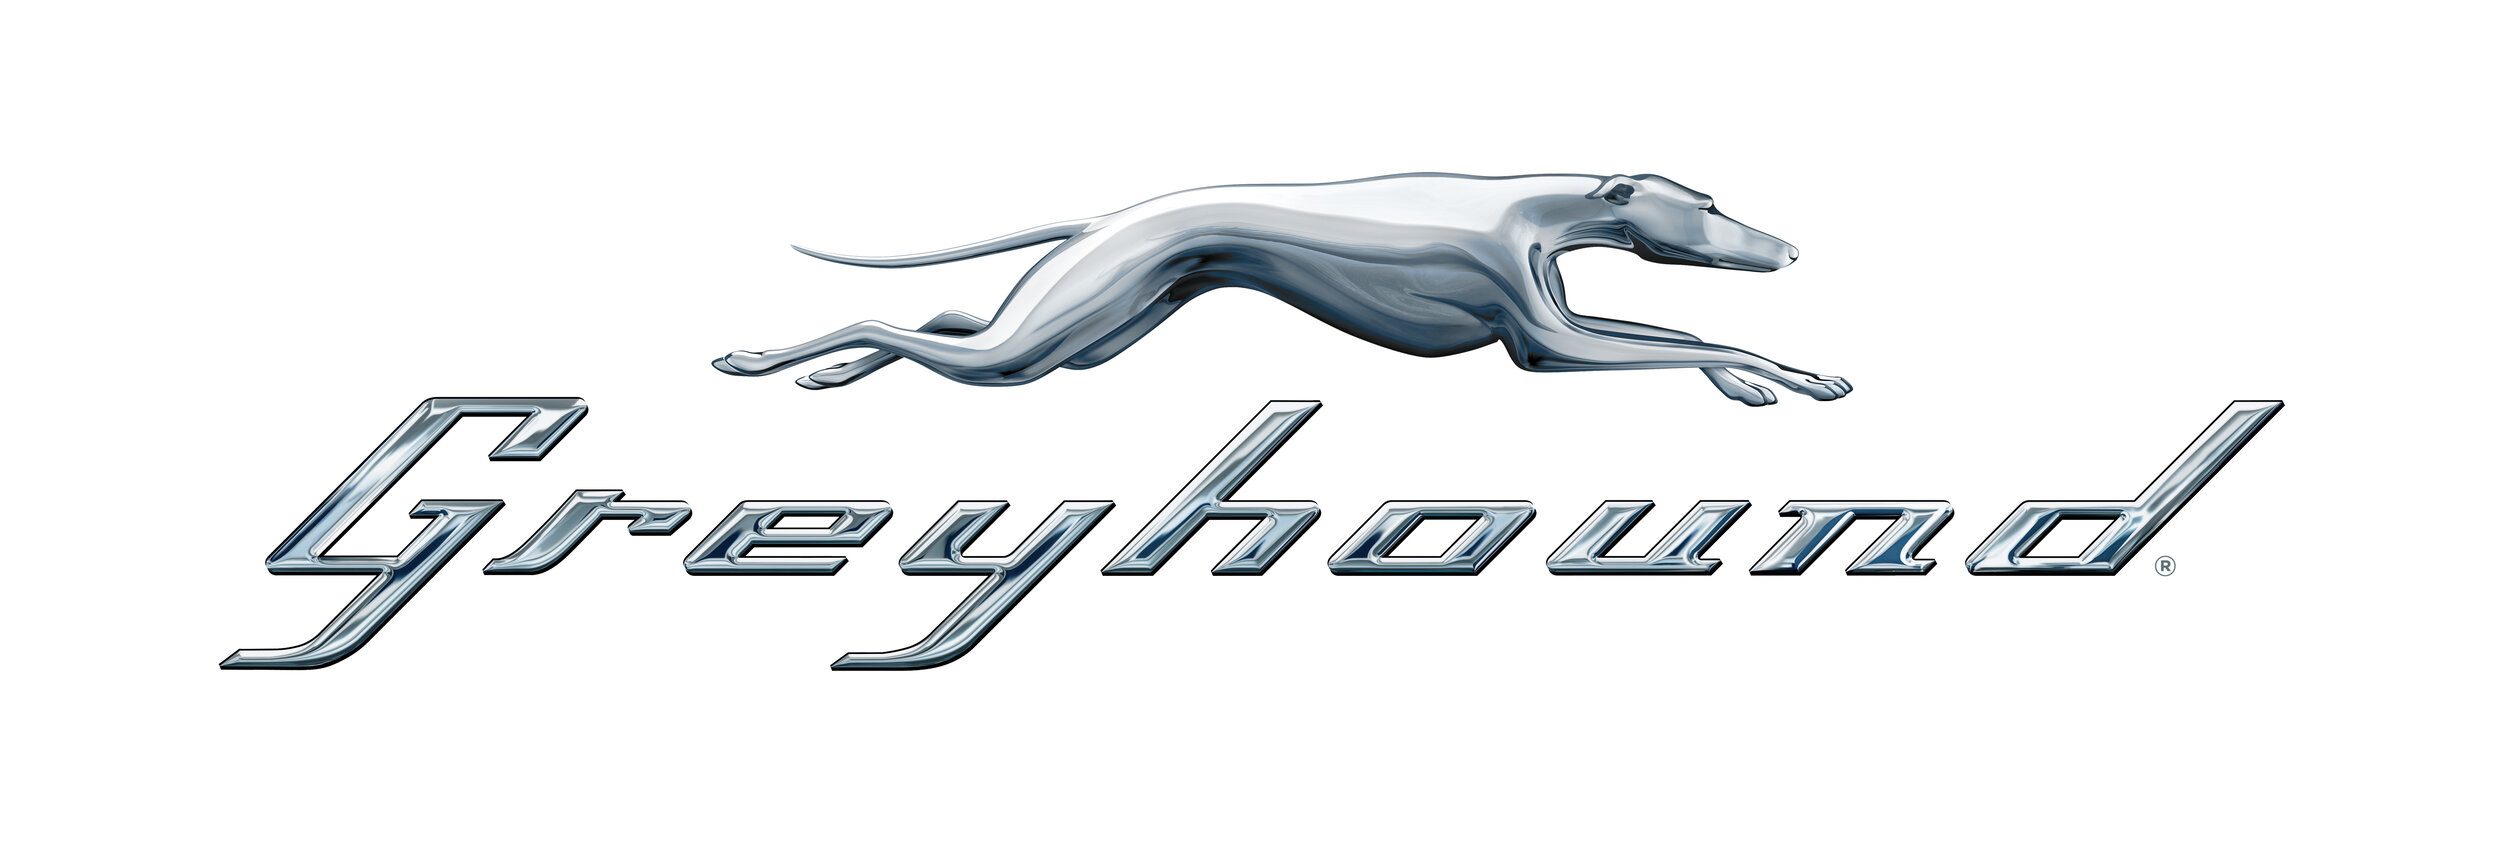 greyhound_Bus_logo